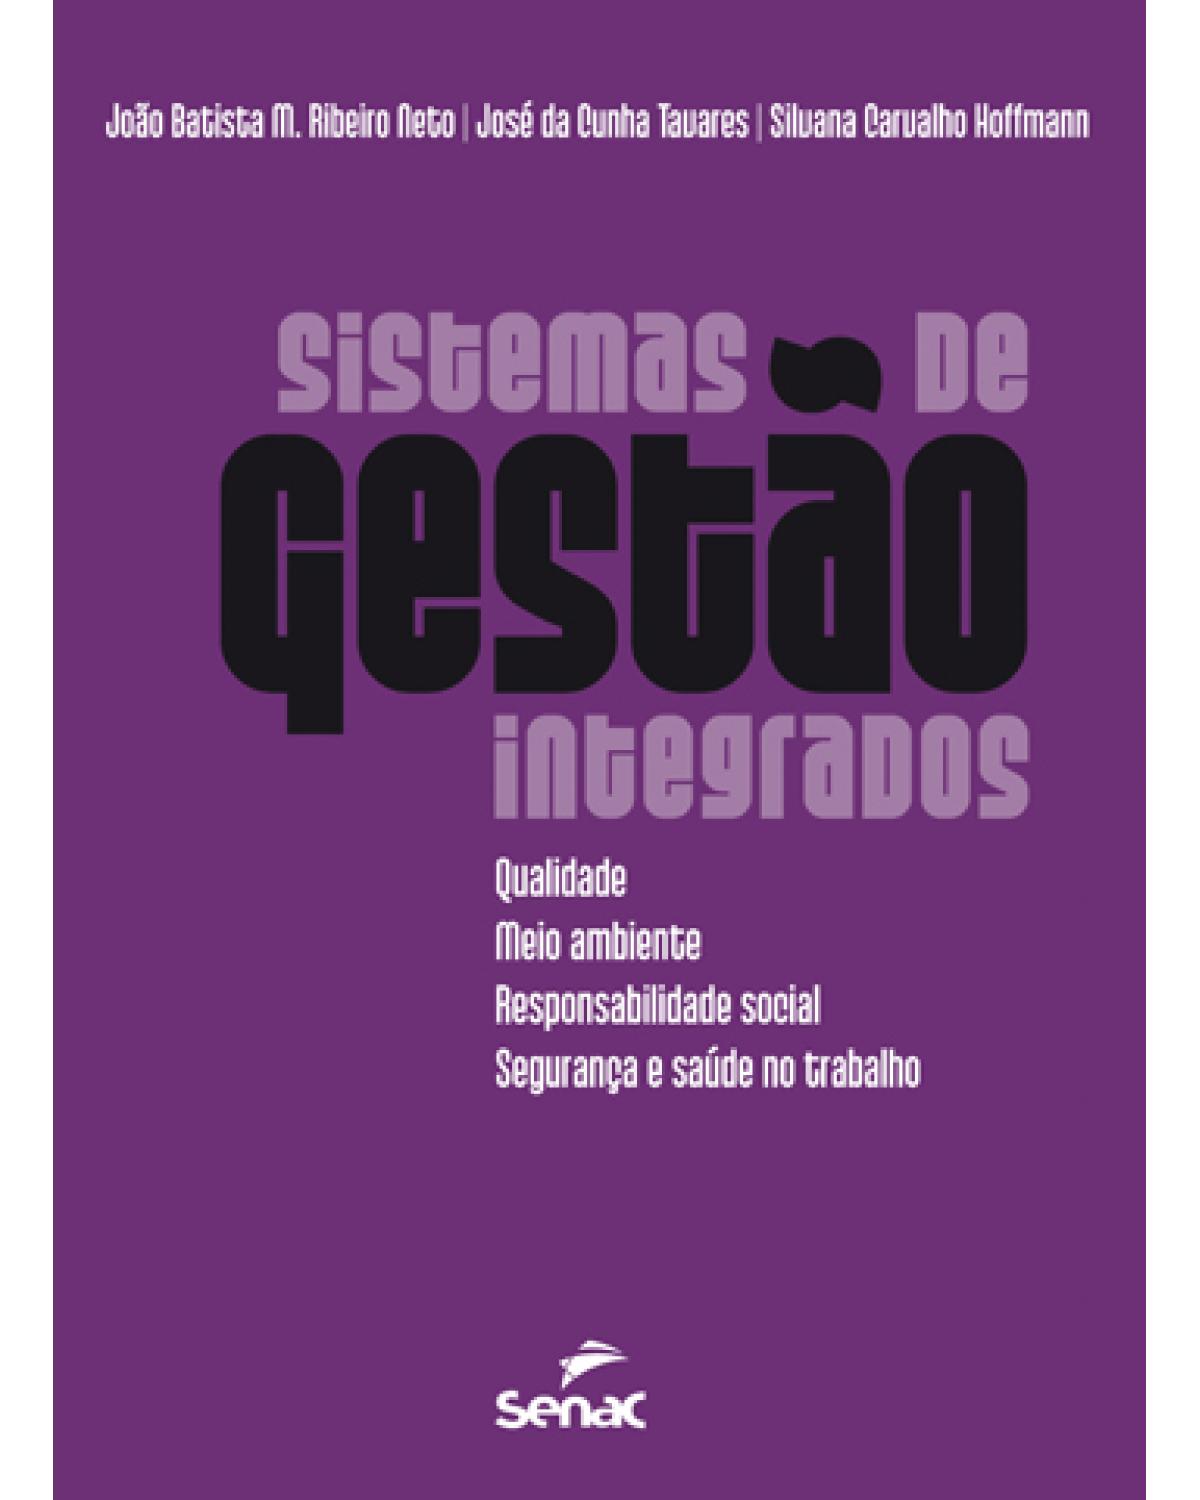 Sistema de gestão integrados: Qualidade, meio ambiente, responsabilidade social, segurança e saúde no trabalho - 5ª Edição